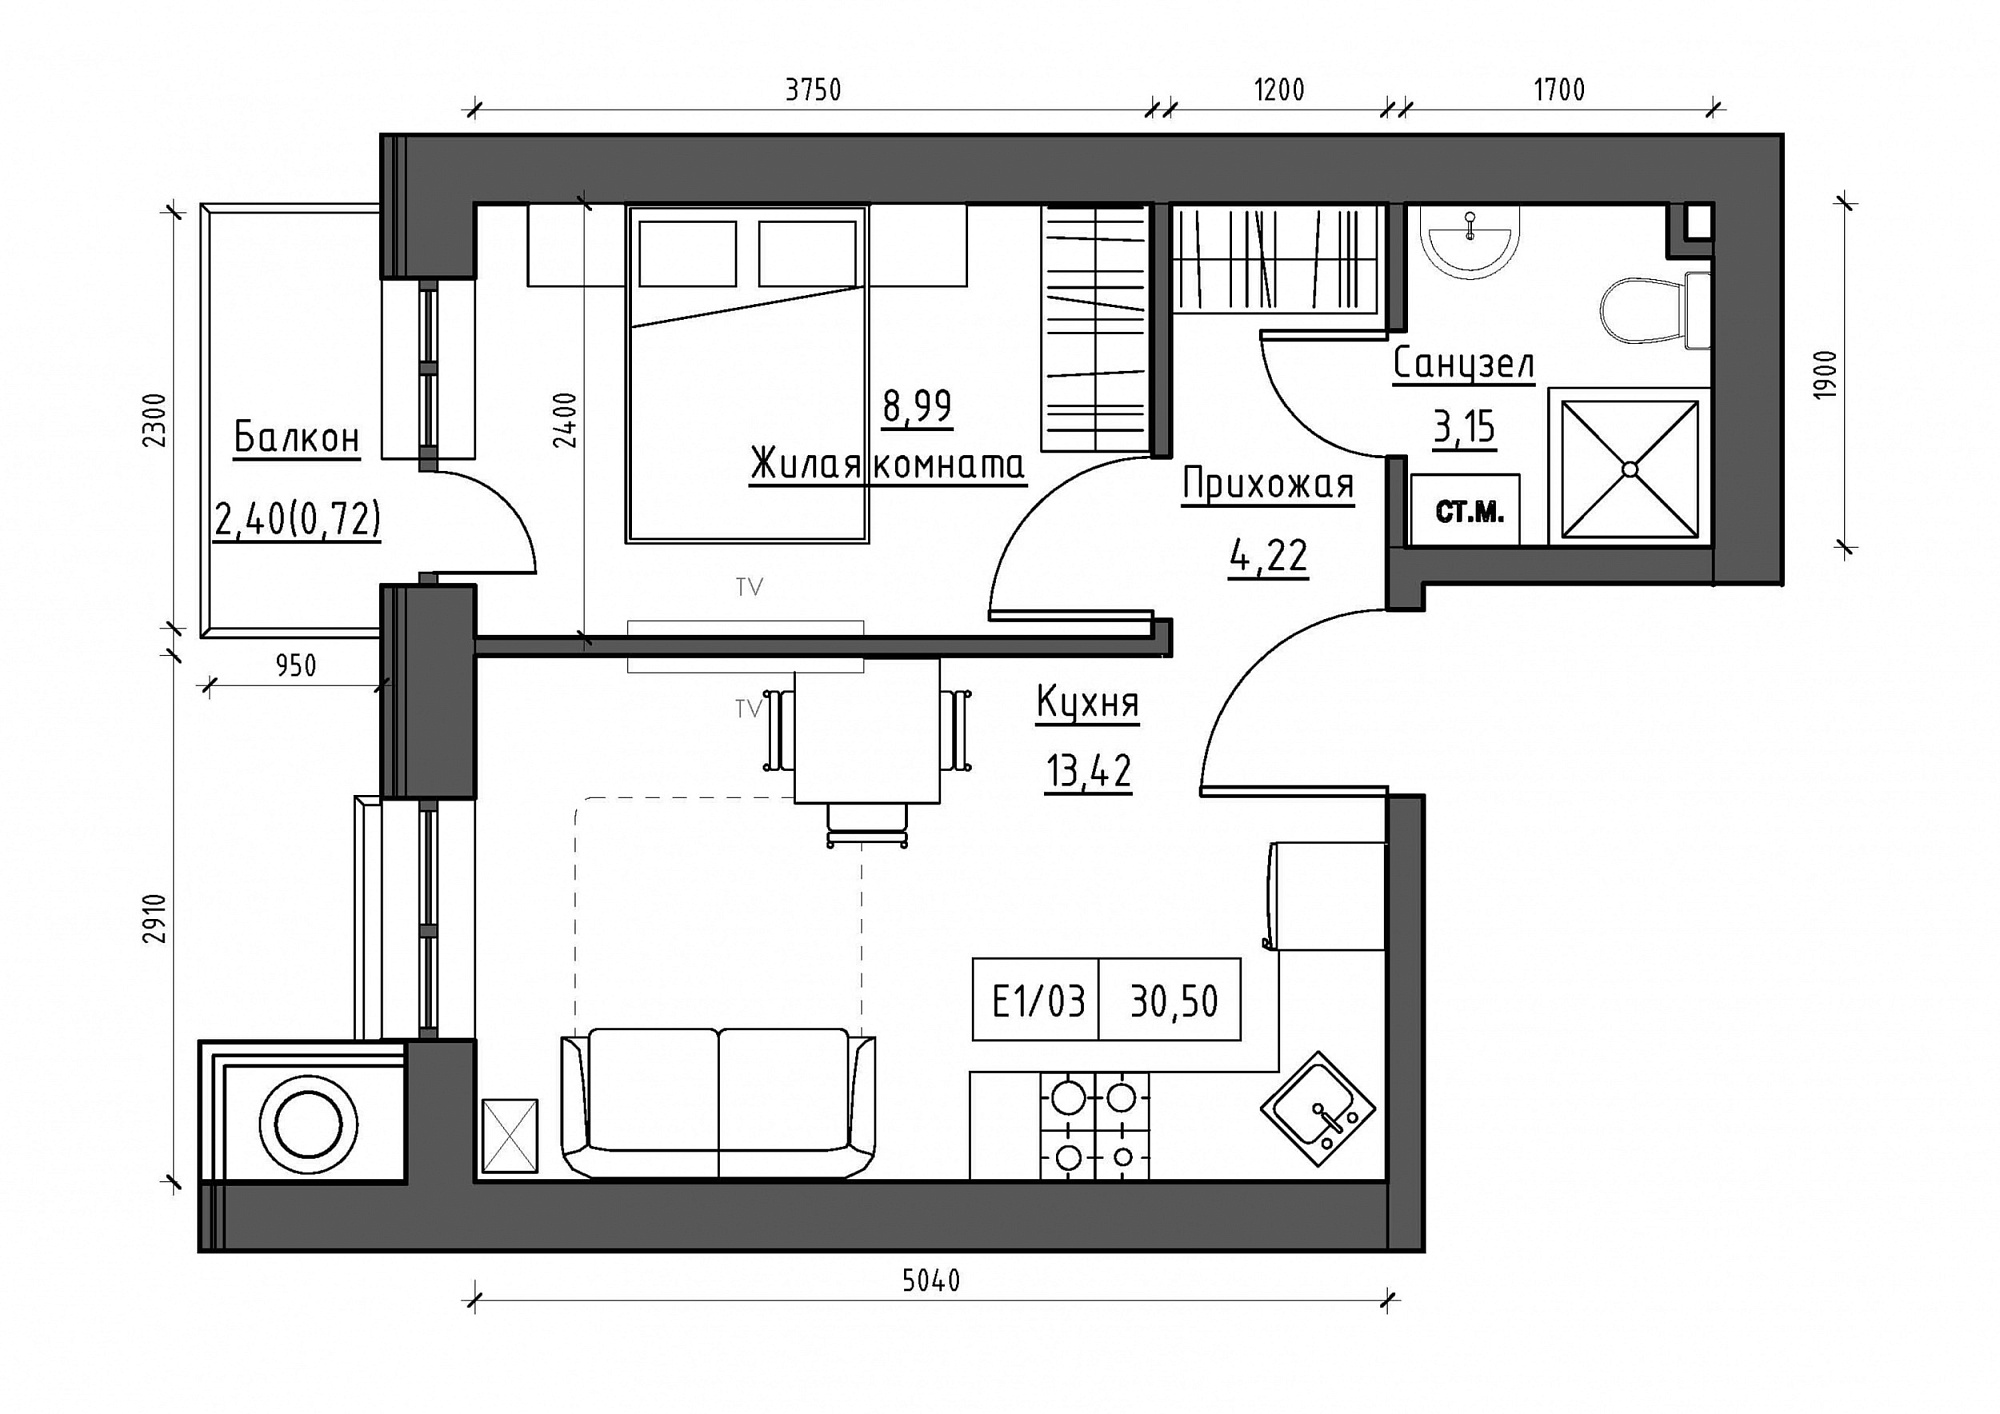 Планування 1-к квартира площею 30.5м2, KS-011-03/0003.